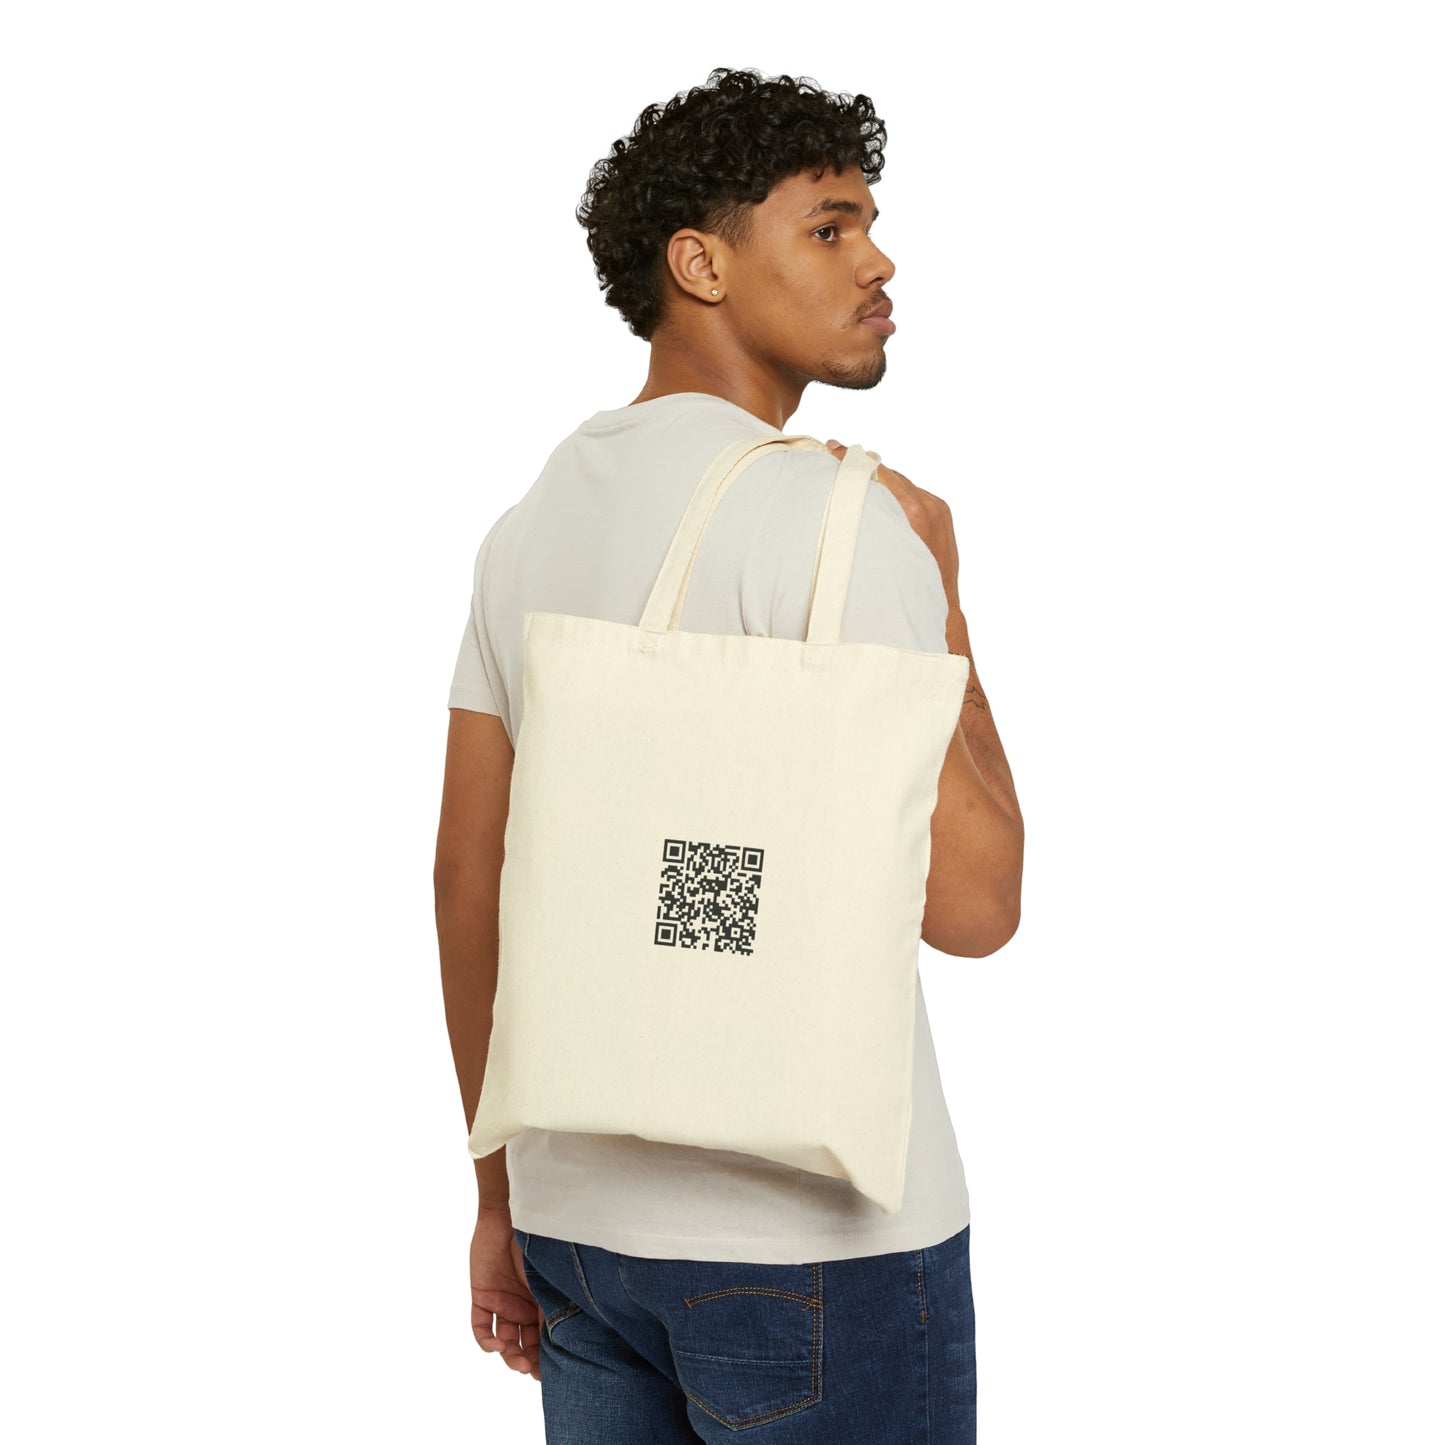 The Mendoza Memo - Cotton Canvas Tote Bag